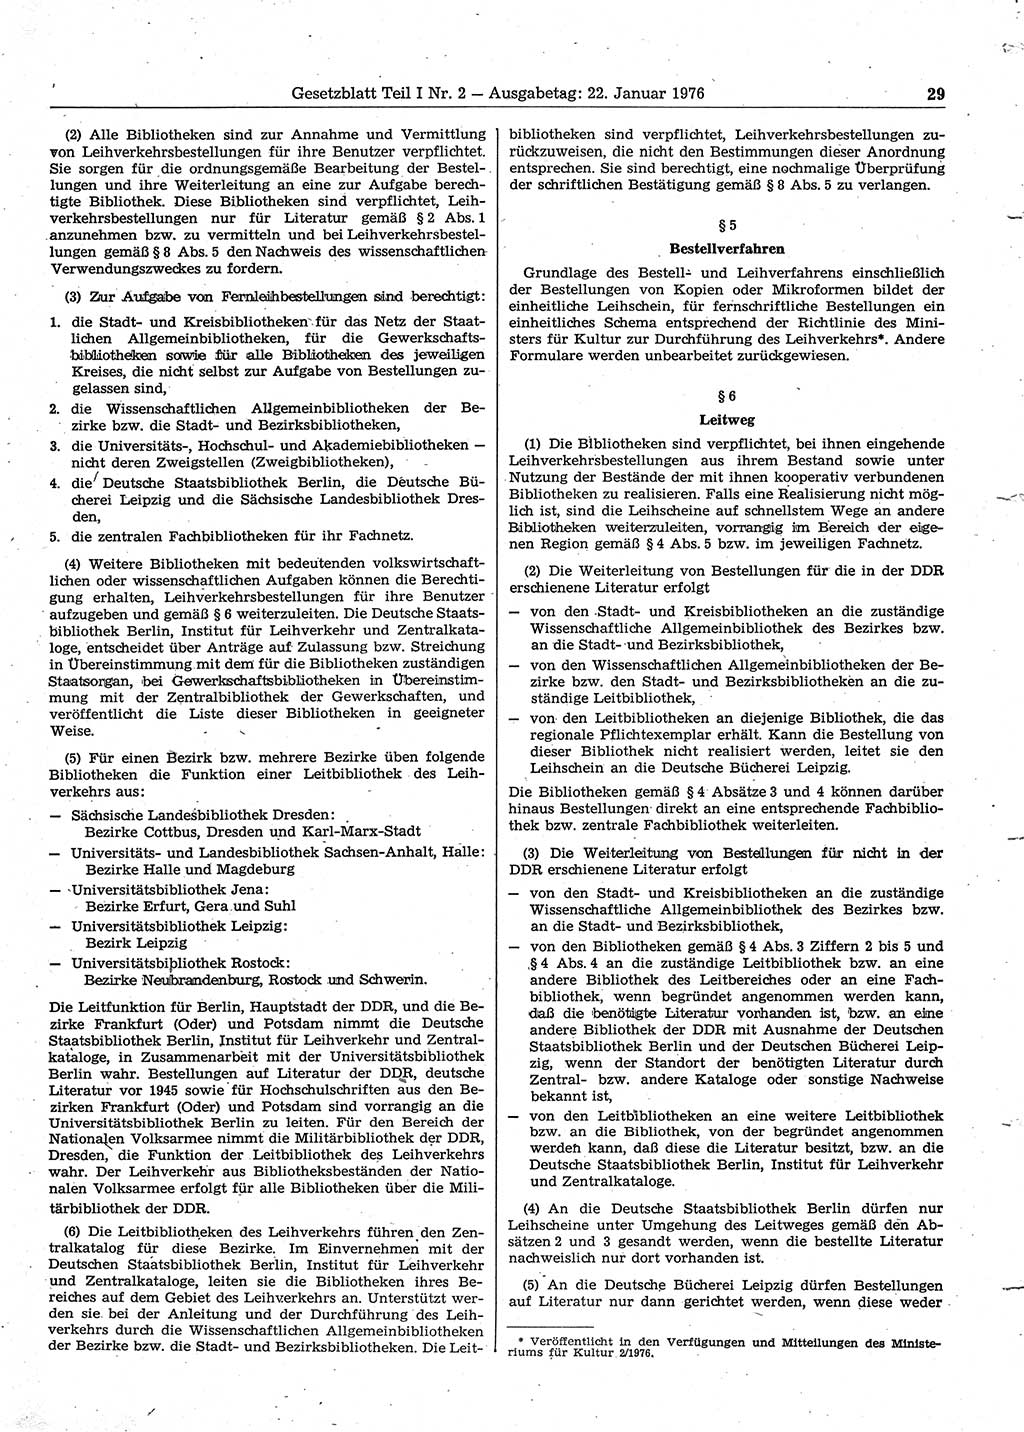 Gesetzblatt (GBl.) der Deutschen Demokratischen Republik (DDR) Teil Ⅰ 1976, Seite 29 (GBl. DDR Ⅰ 1976, S. 29)